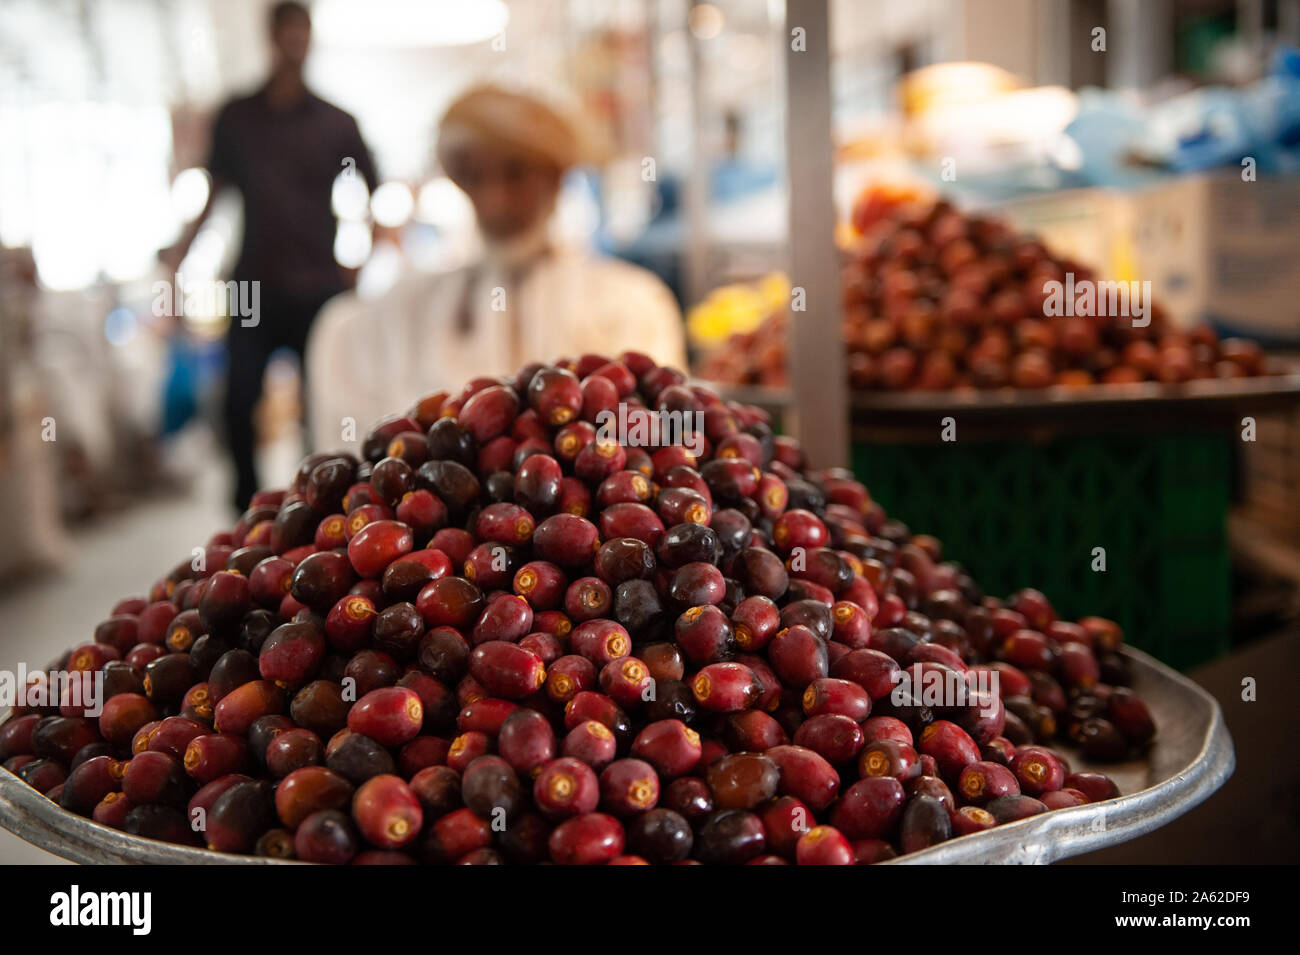 Les dates d'Omanais à la vente dans le marché de légumes près de souk Mutrah, Vieux Muscat, Oman Banque D'Images